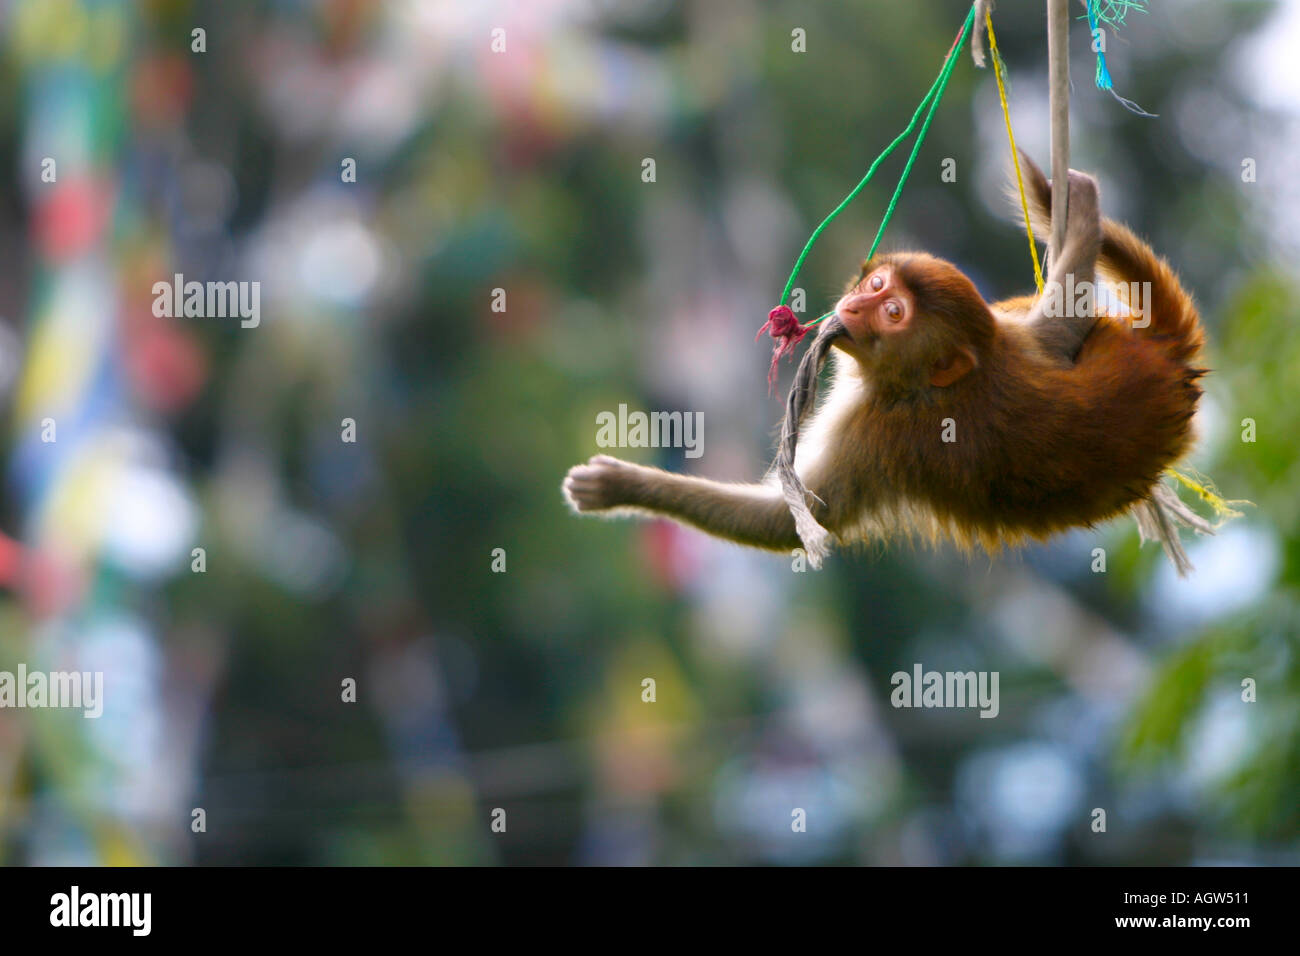 Temple monkey hanging from prayer flags at Swayambunath temple Kathmandu Nepal Stock Photo